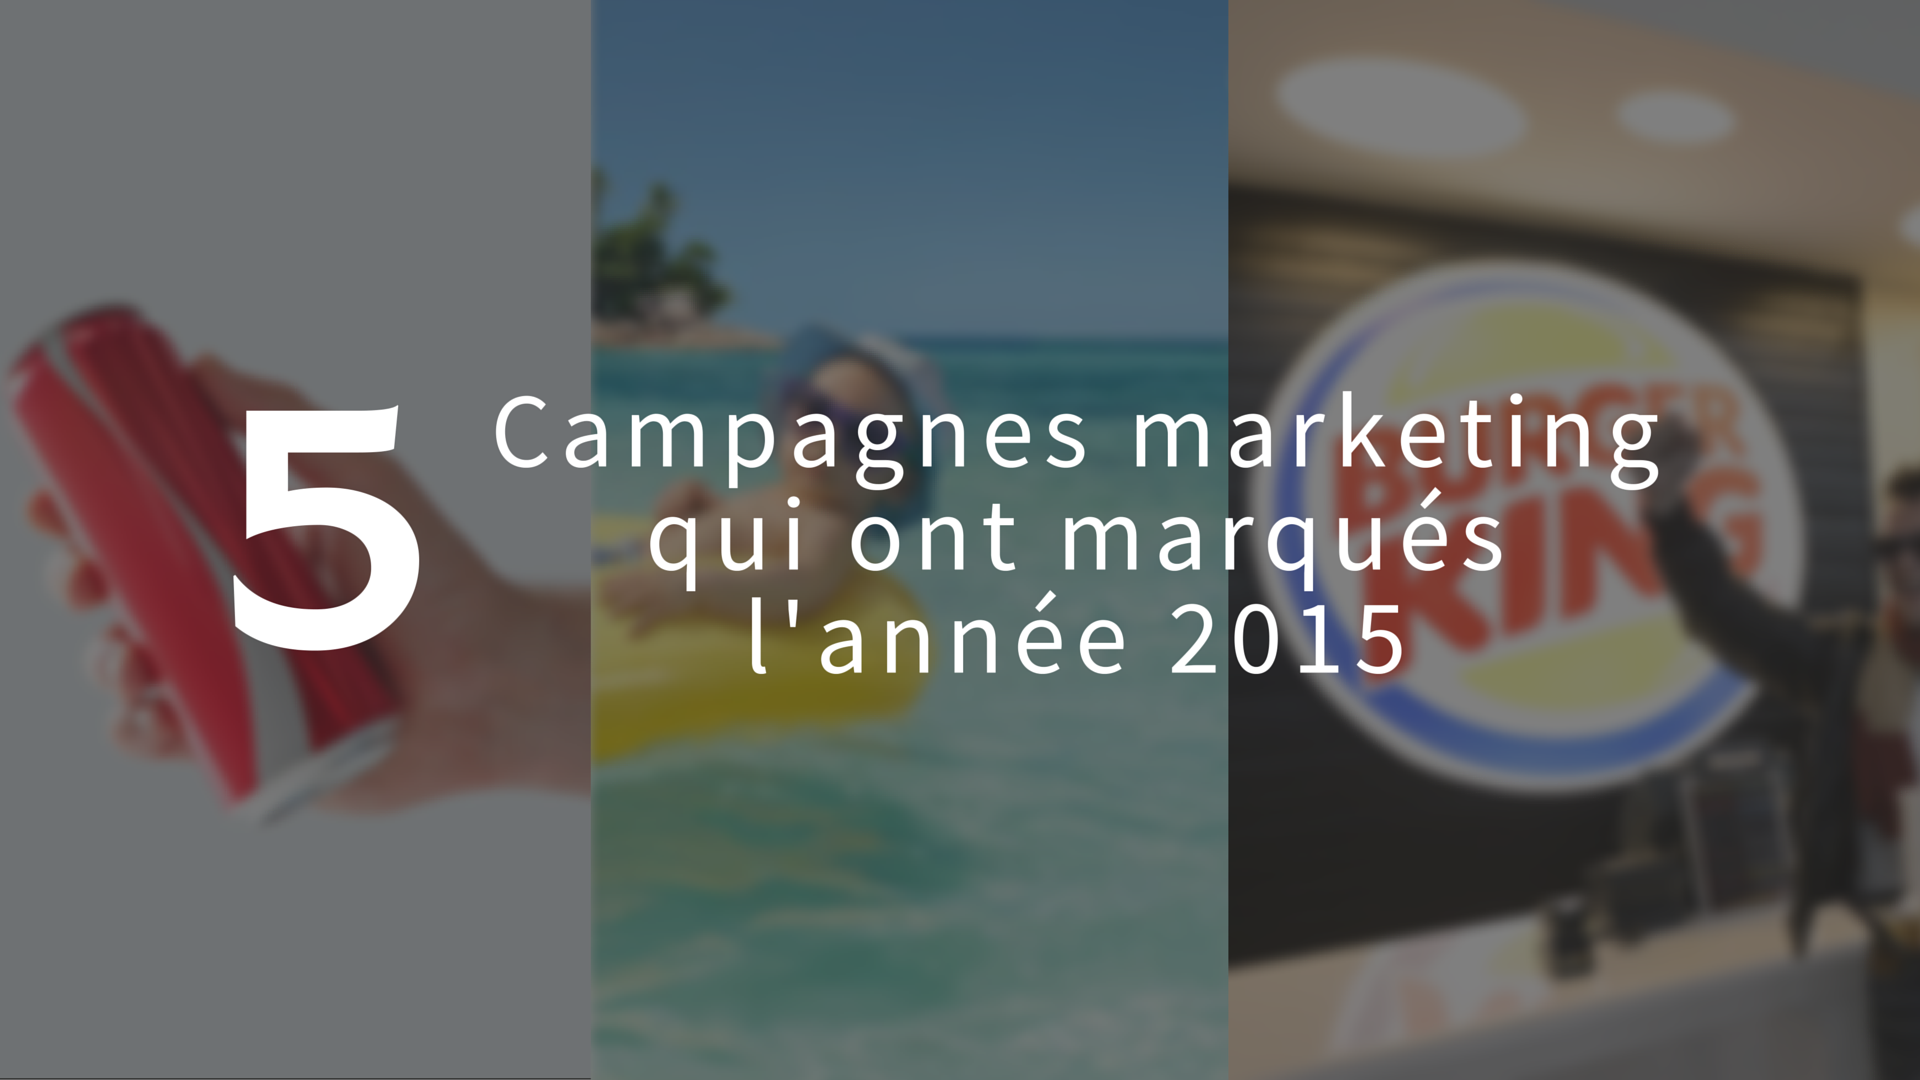 5 campagnes marketing qui ont marqués l'année 2015